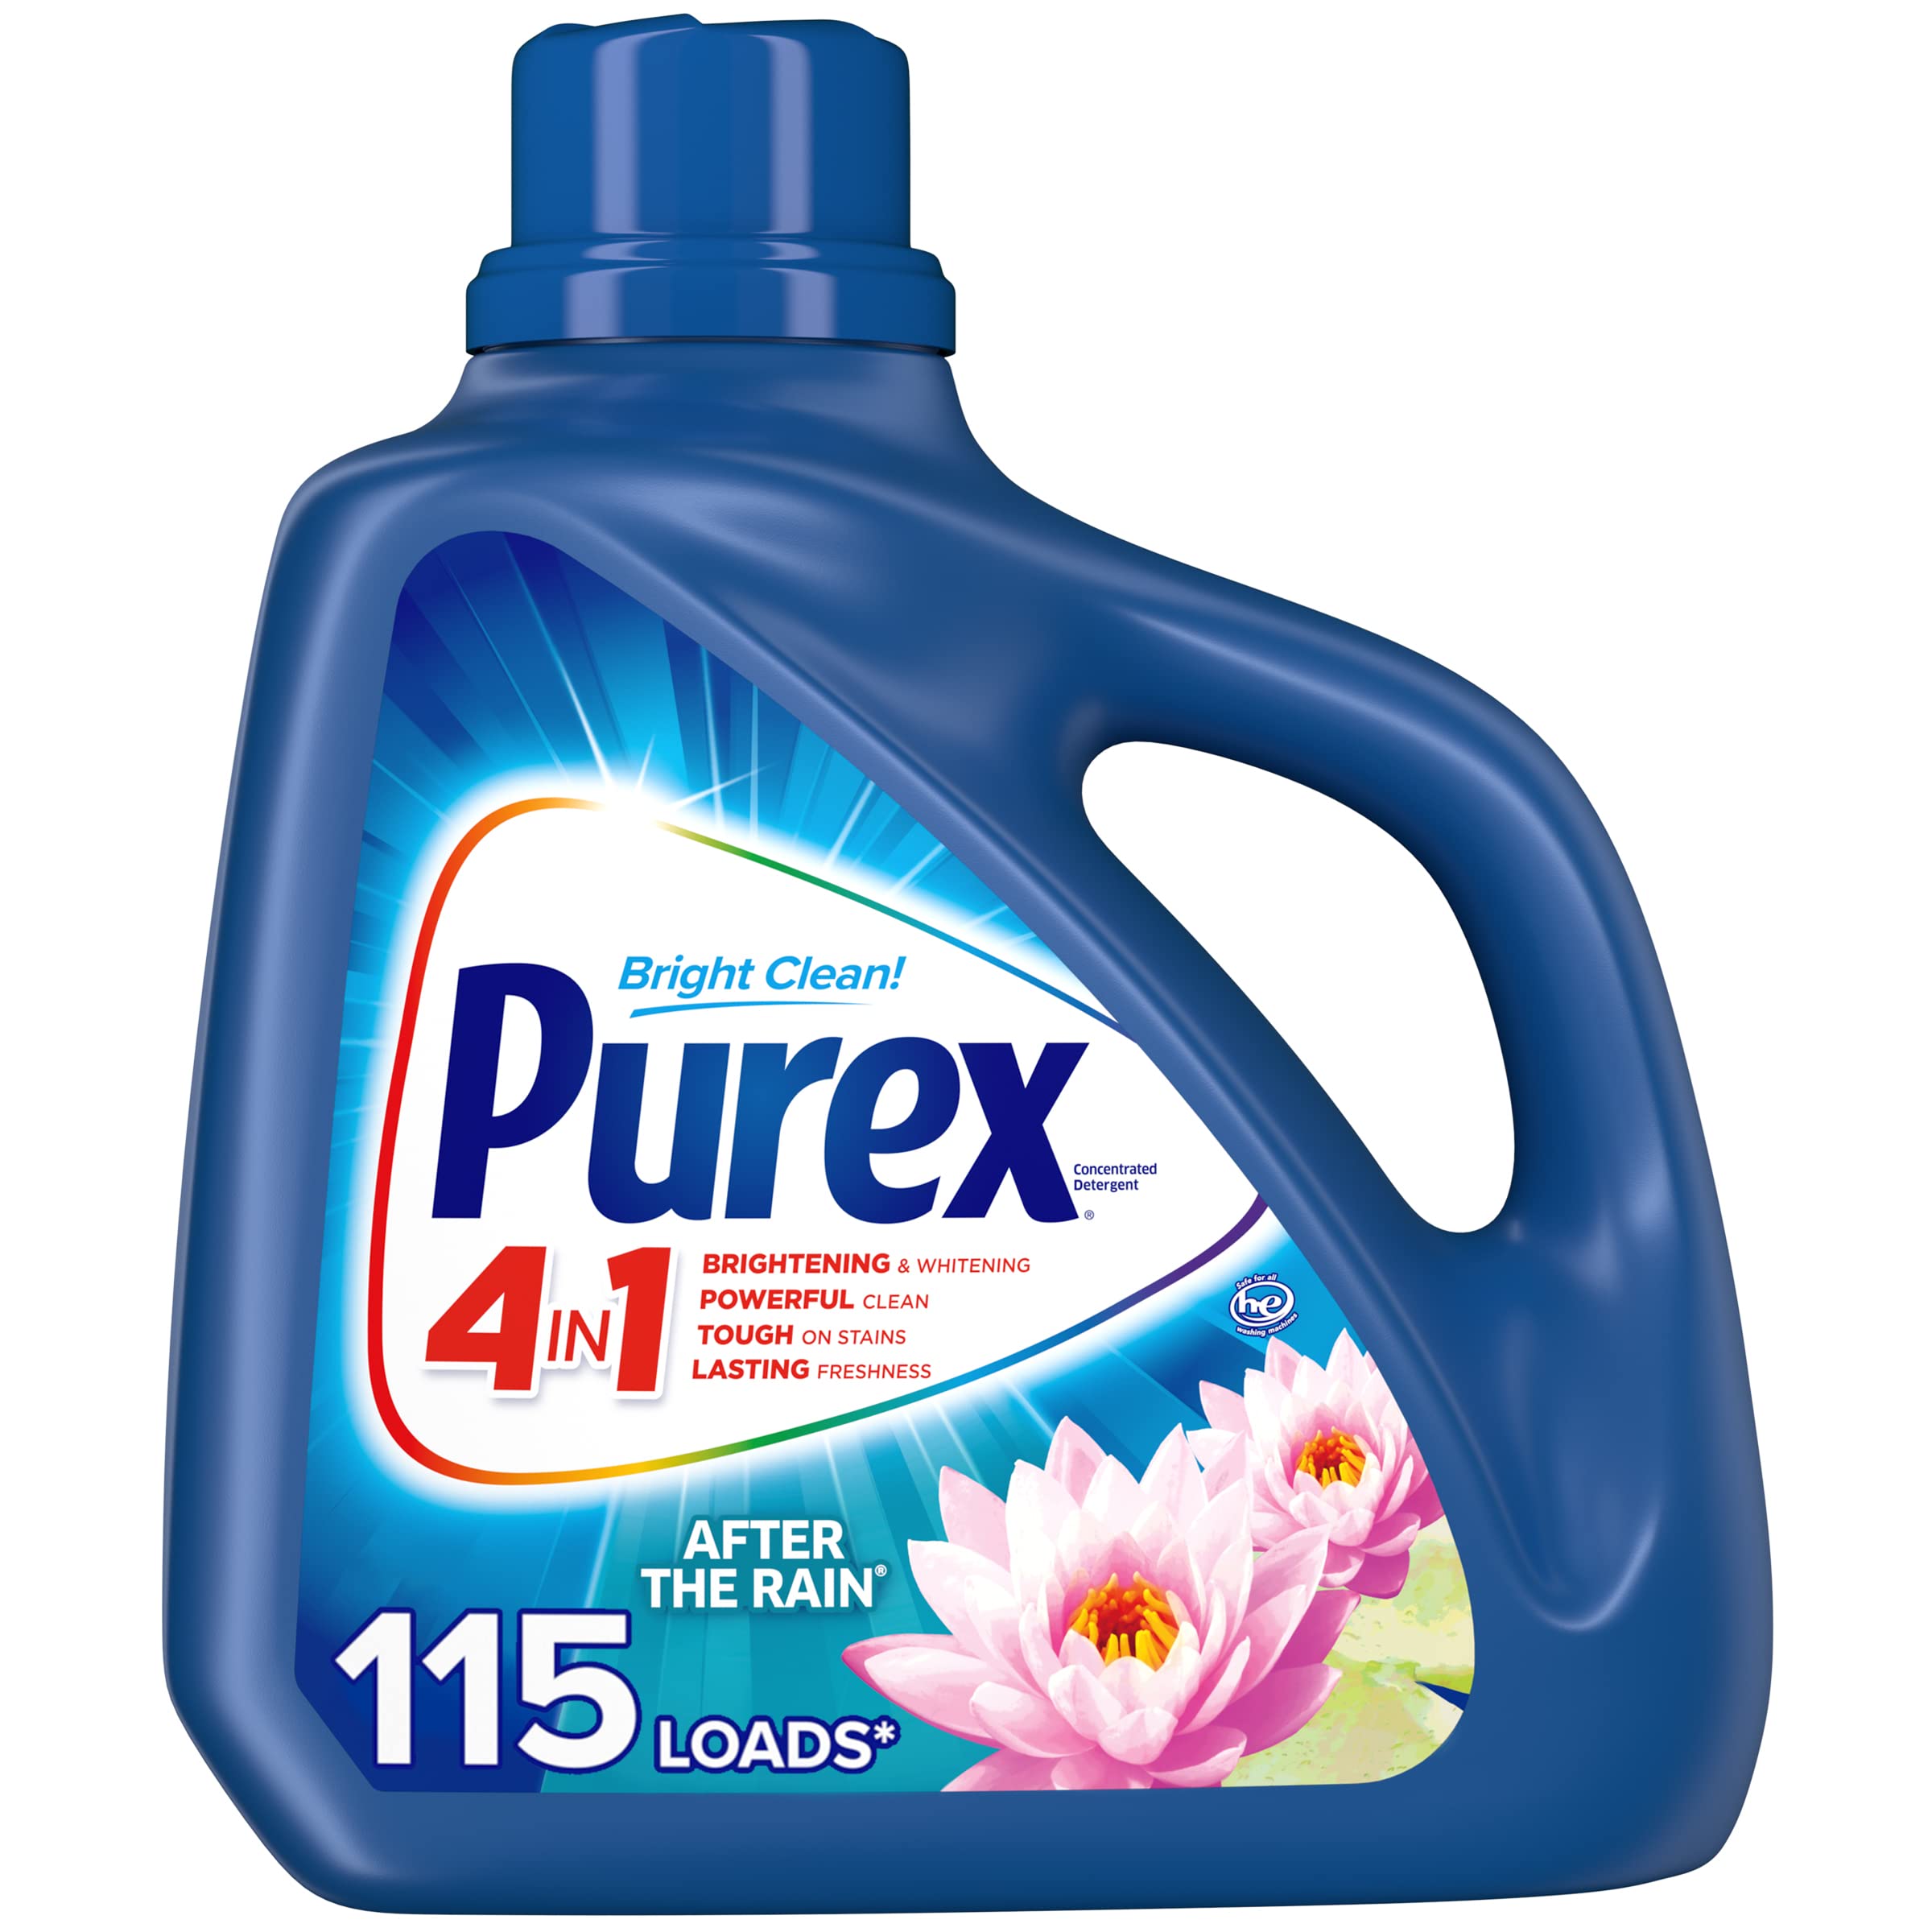 Is Purex Laundry Detergent Good?